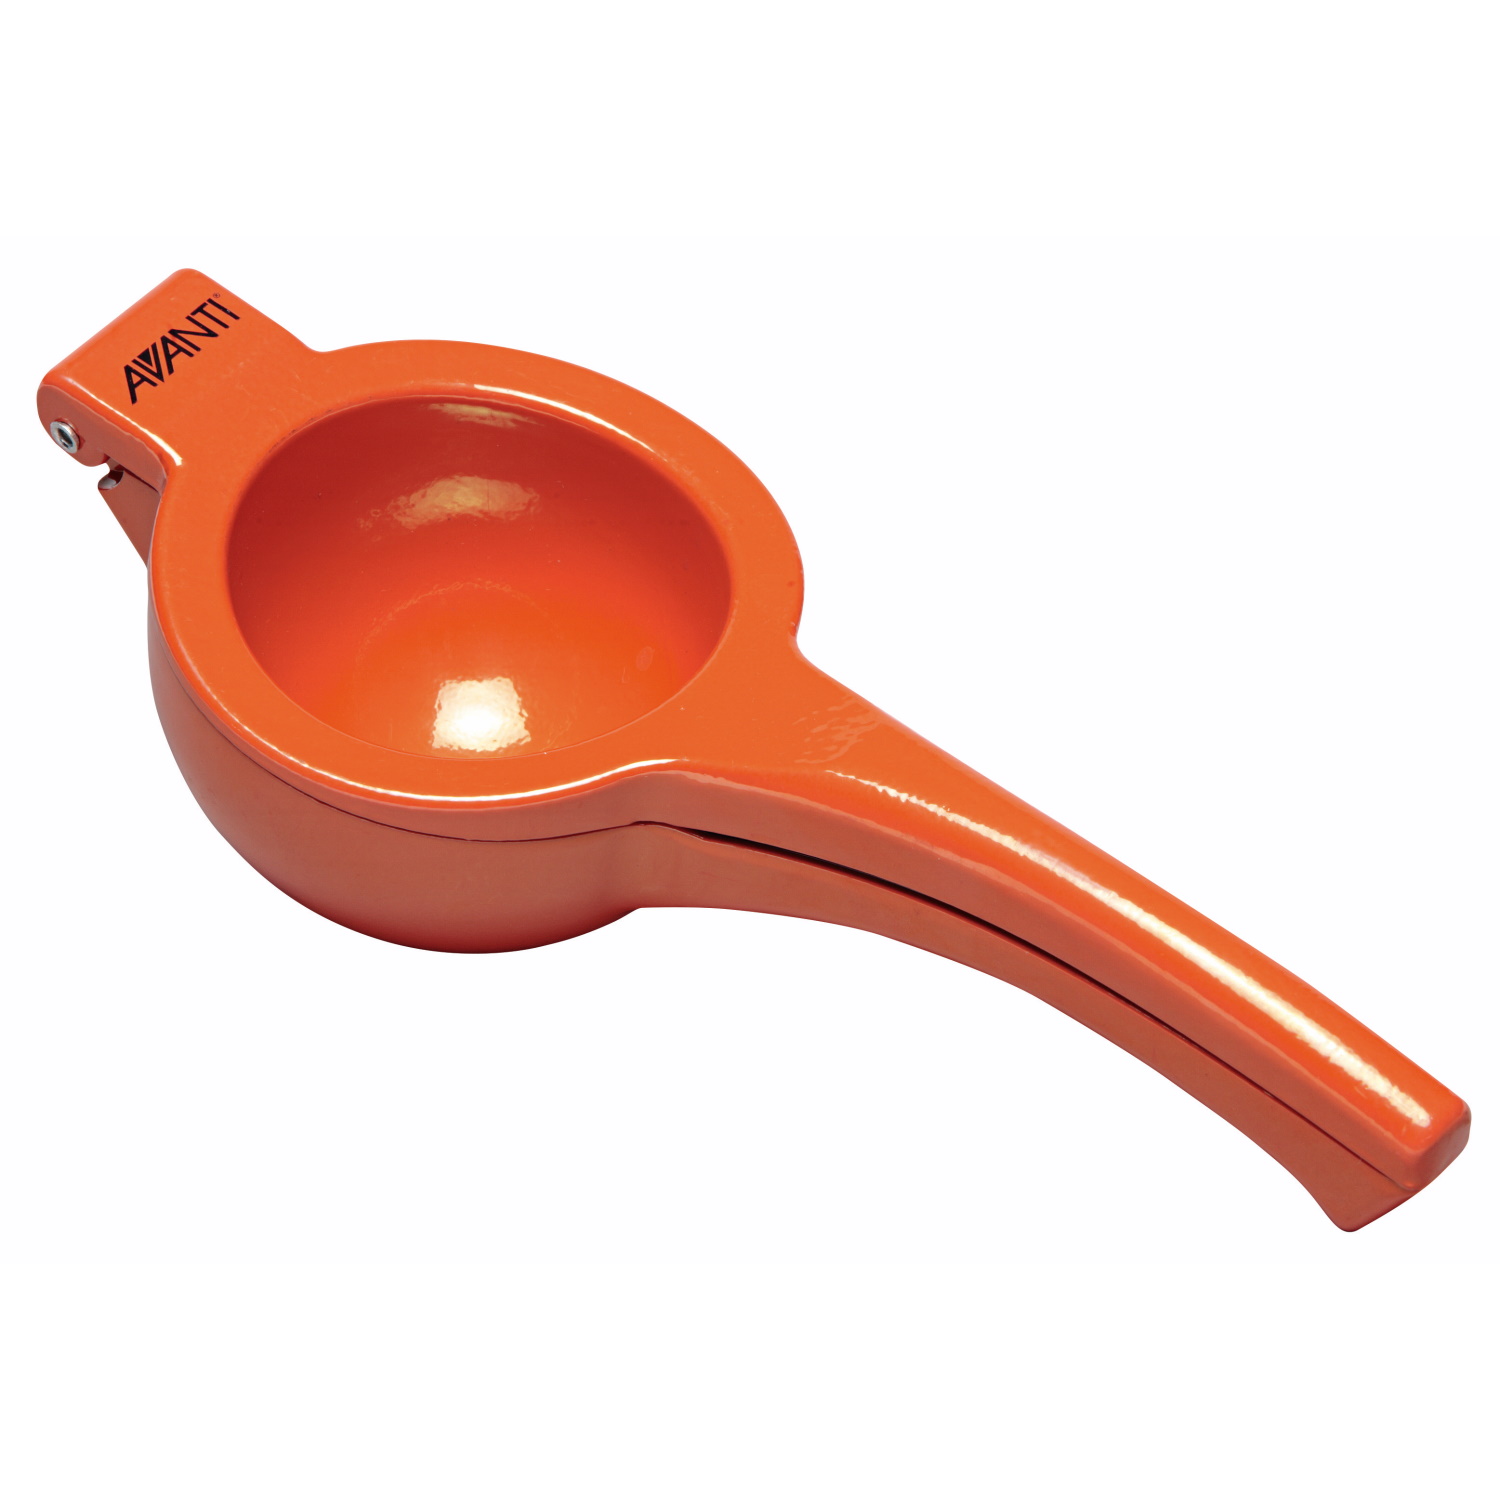 Avanti Orange Squeezer 90mm Diameter